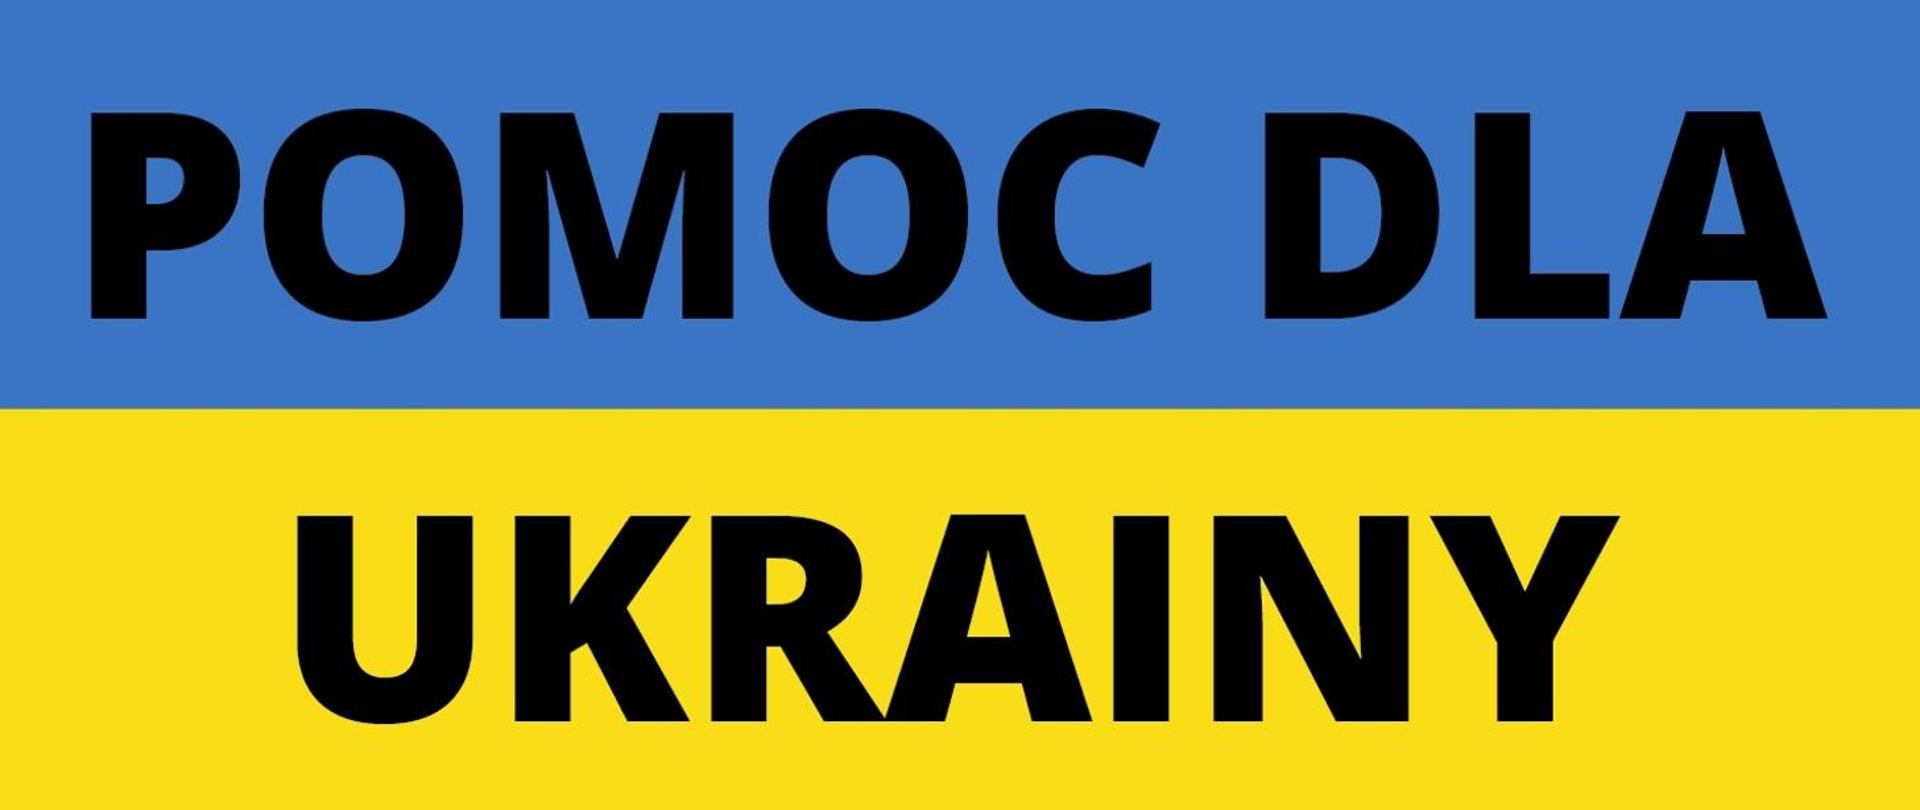 Niebiesko żółty baner z napisem "Pomoc dla Ukrainy"